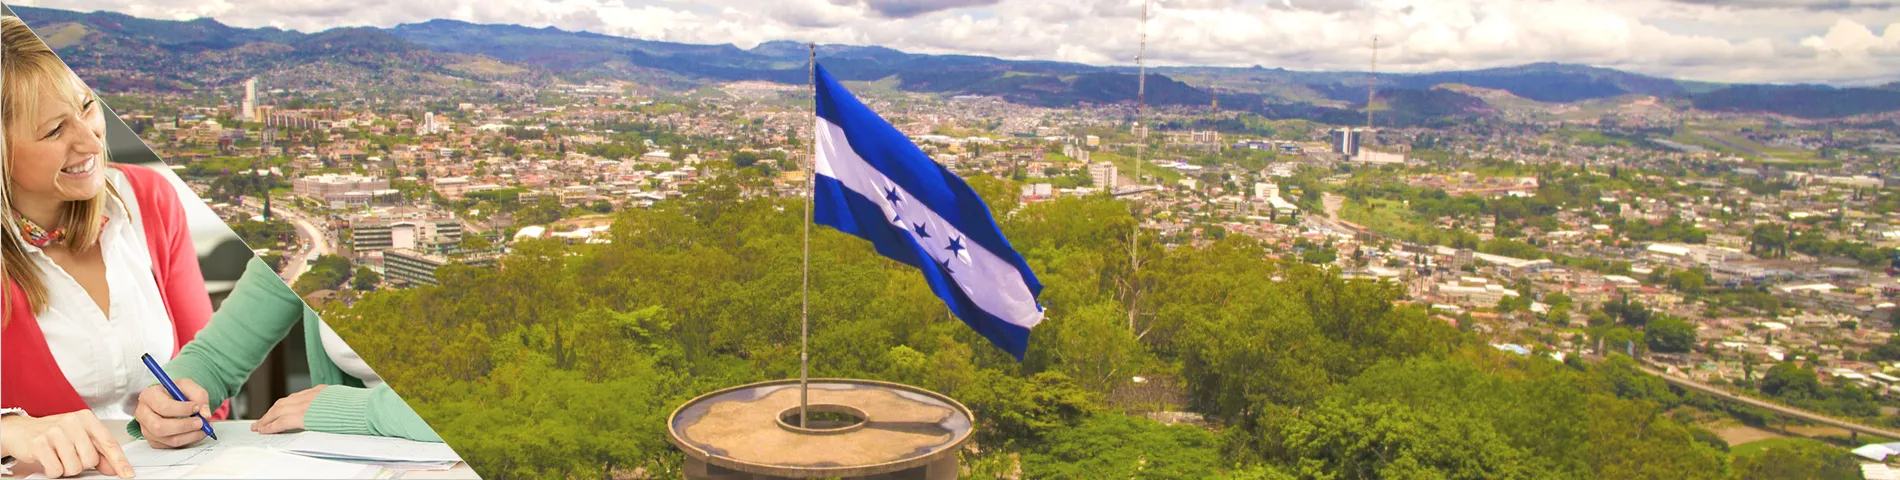 Honduras - Nauka Języka i Zakwaterowanie u Nauczyciela